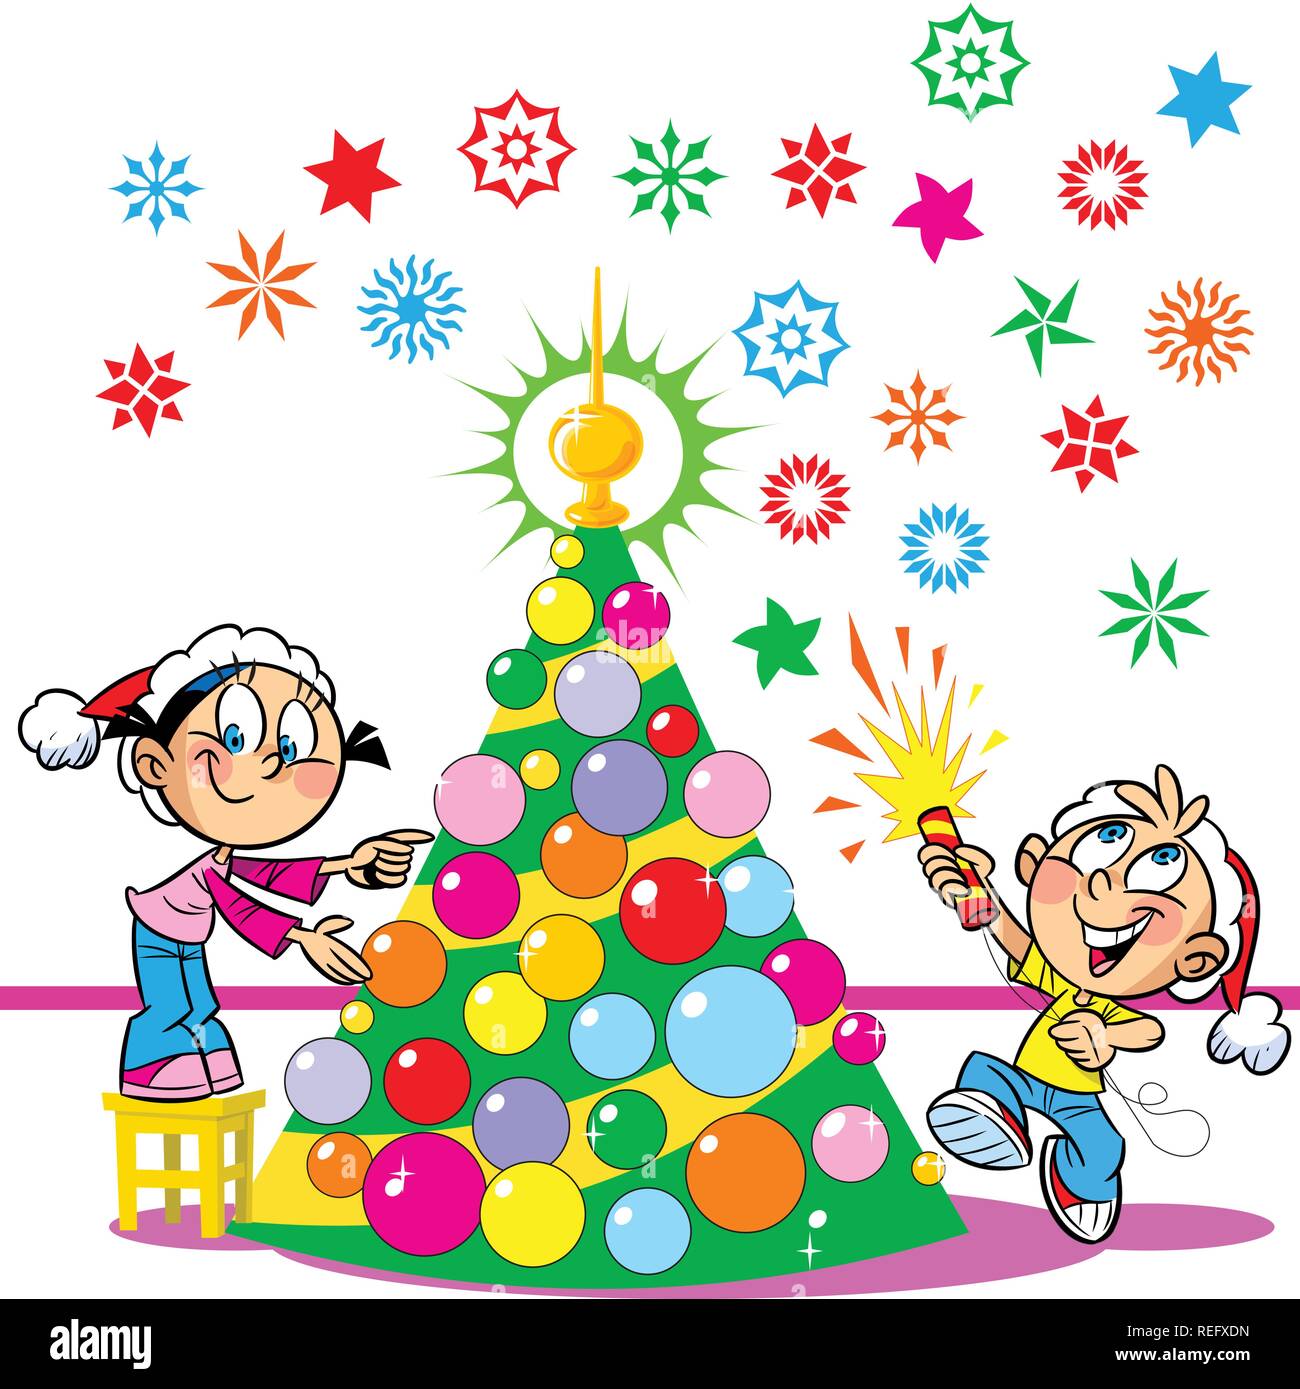 In der Abbildung, die Kinder schmücken den Weihnachtsbaum. Junge und  Mädchen lustig und amüsant. Der Junge in den Händen der party poppers.  Abbildung: Don Stock-Vektorgrafik - Alamy